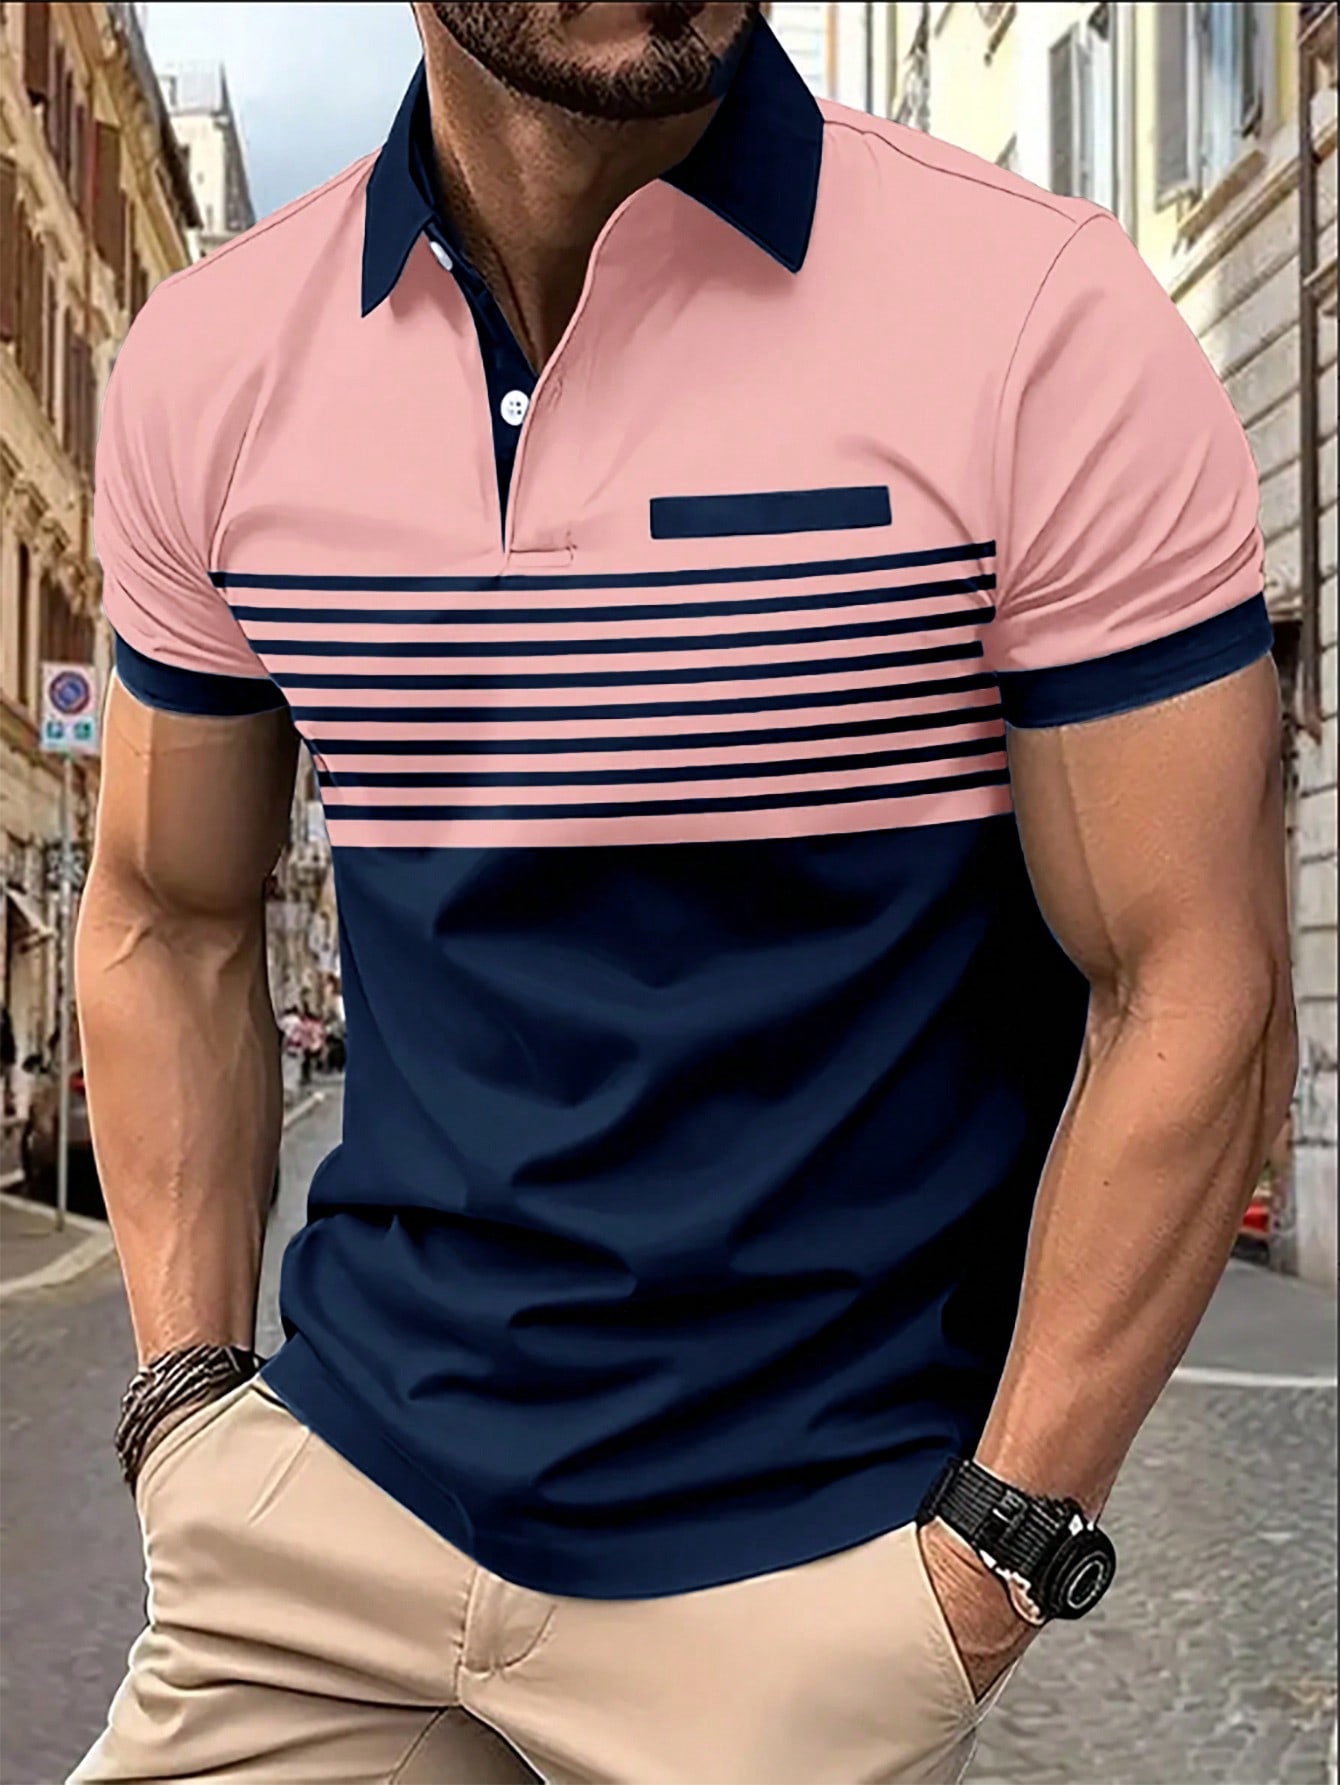 Мужская рубашка-поло контрастного цвета Manfinity Homme, розовый